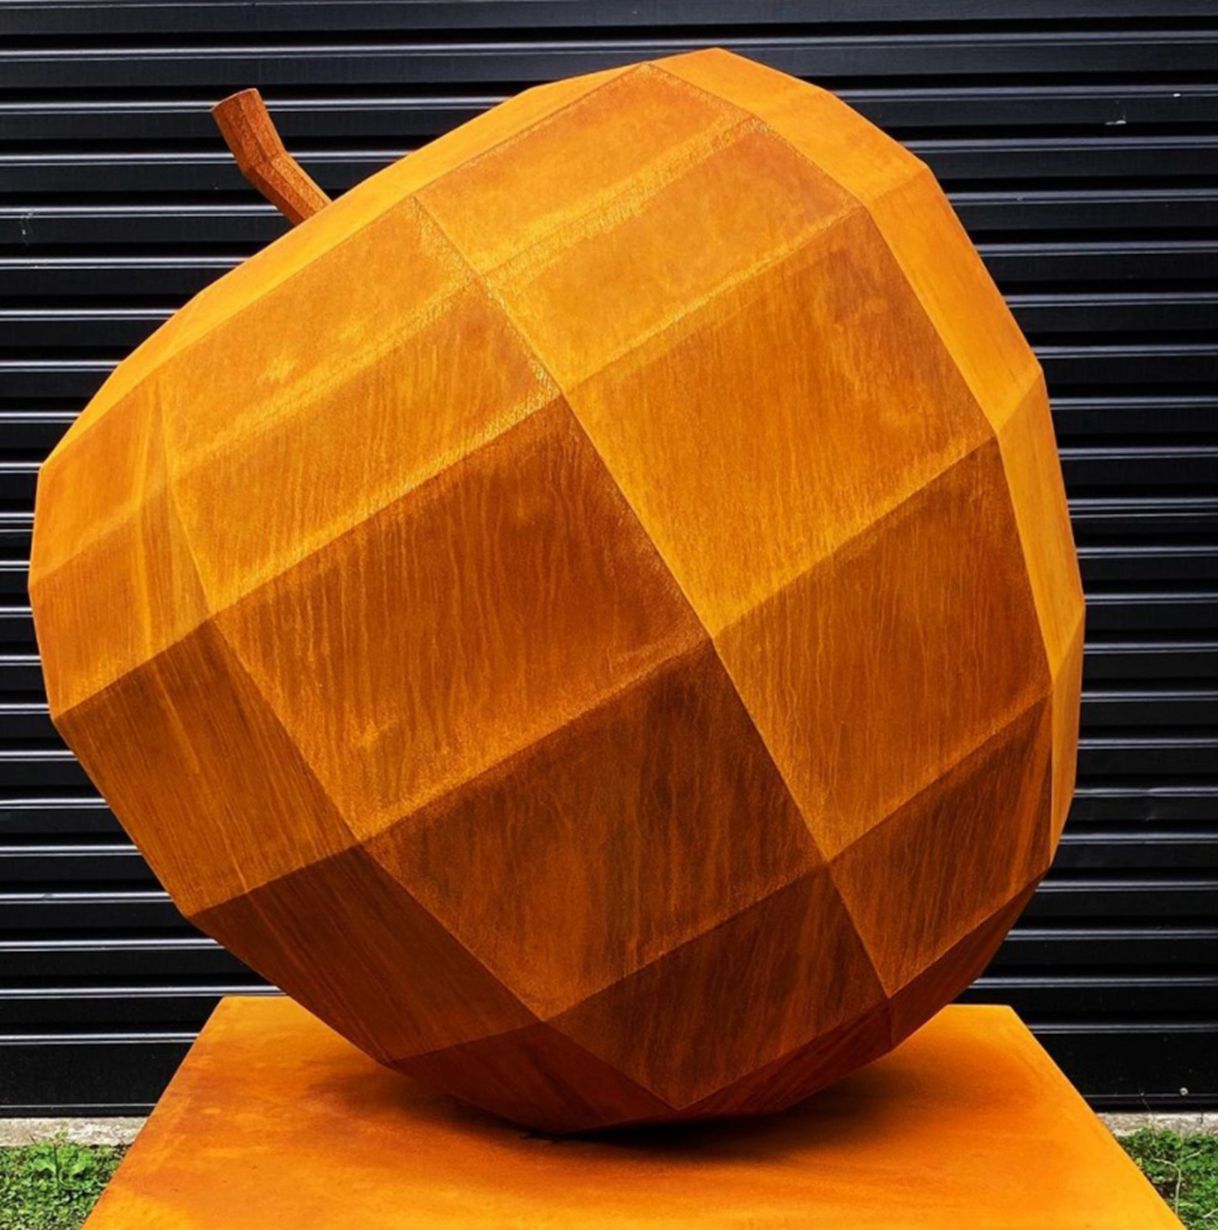 Geometry of the apple corten steel sculpture